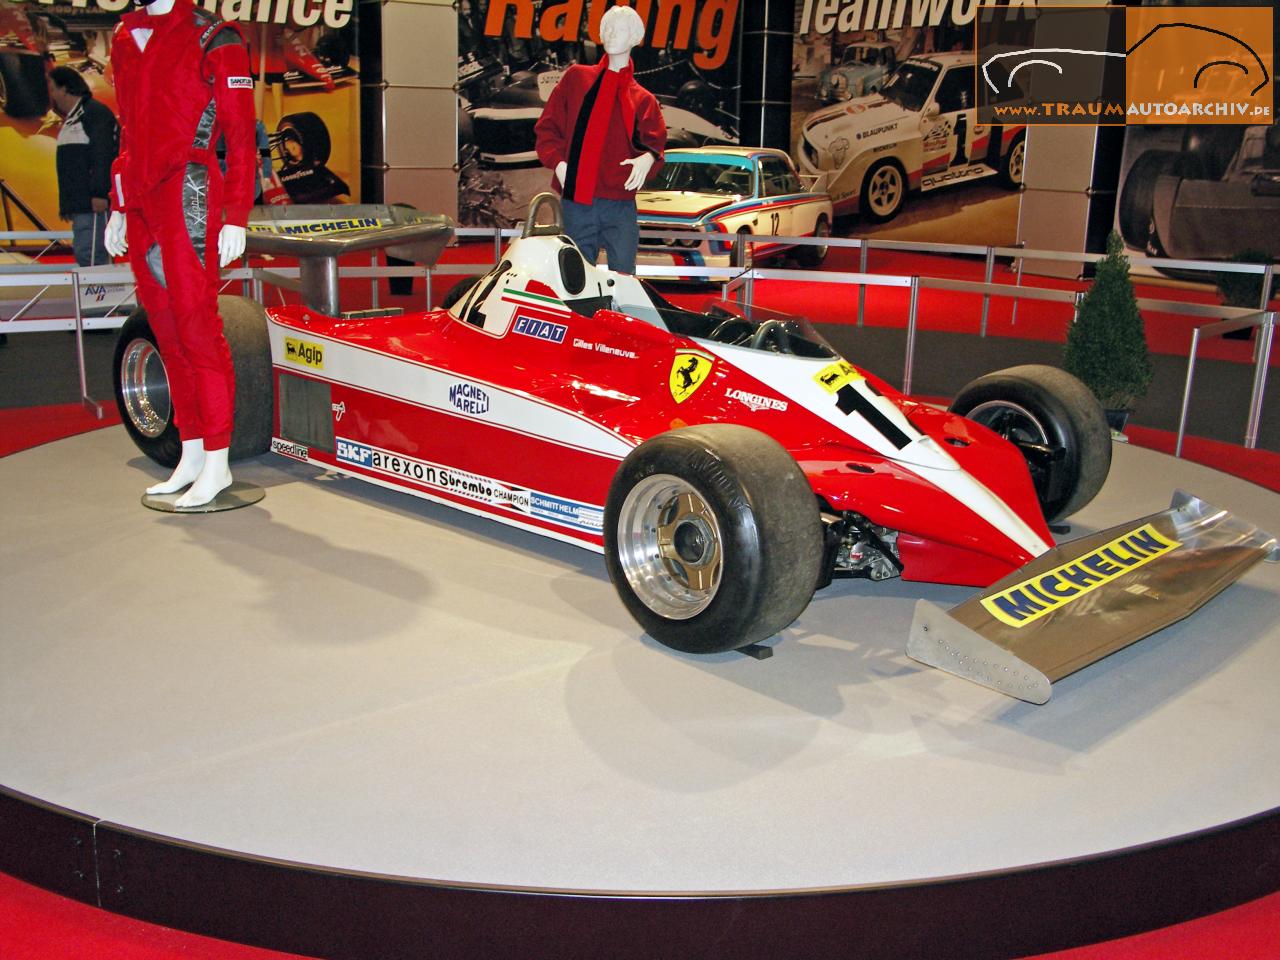 F1_Ferrari 312 T3 '1978.jpg 174.8K